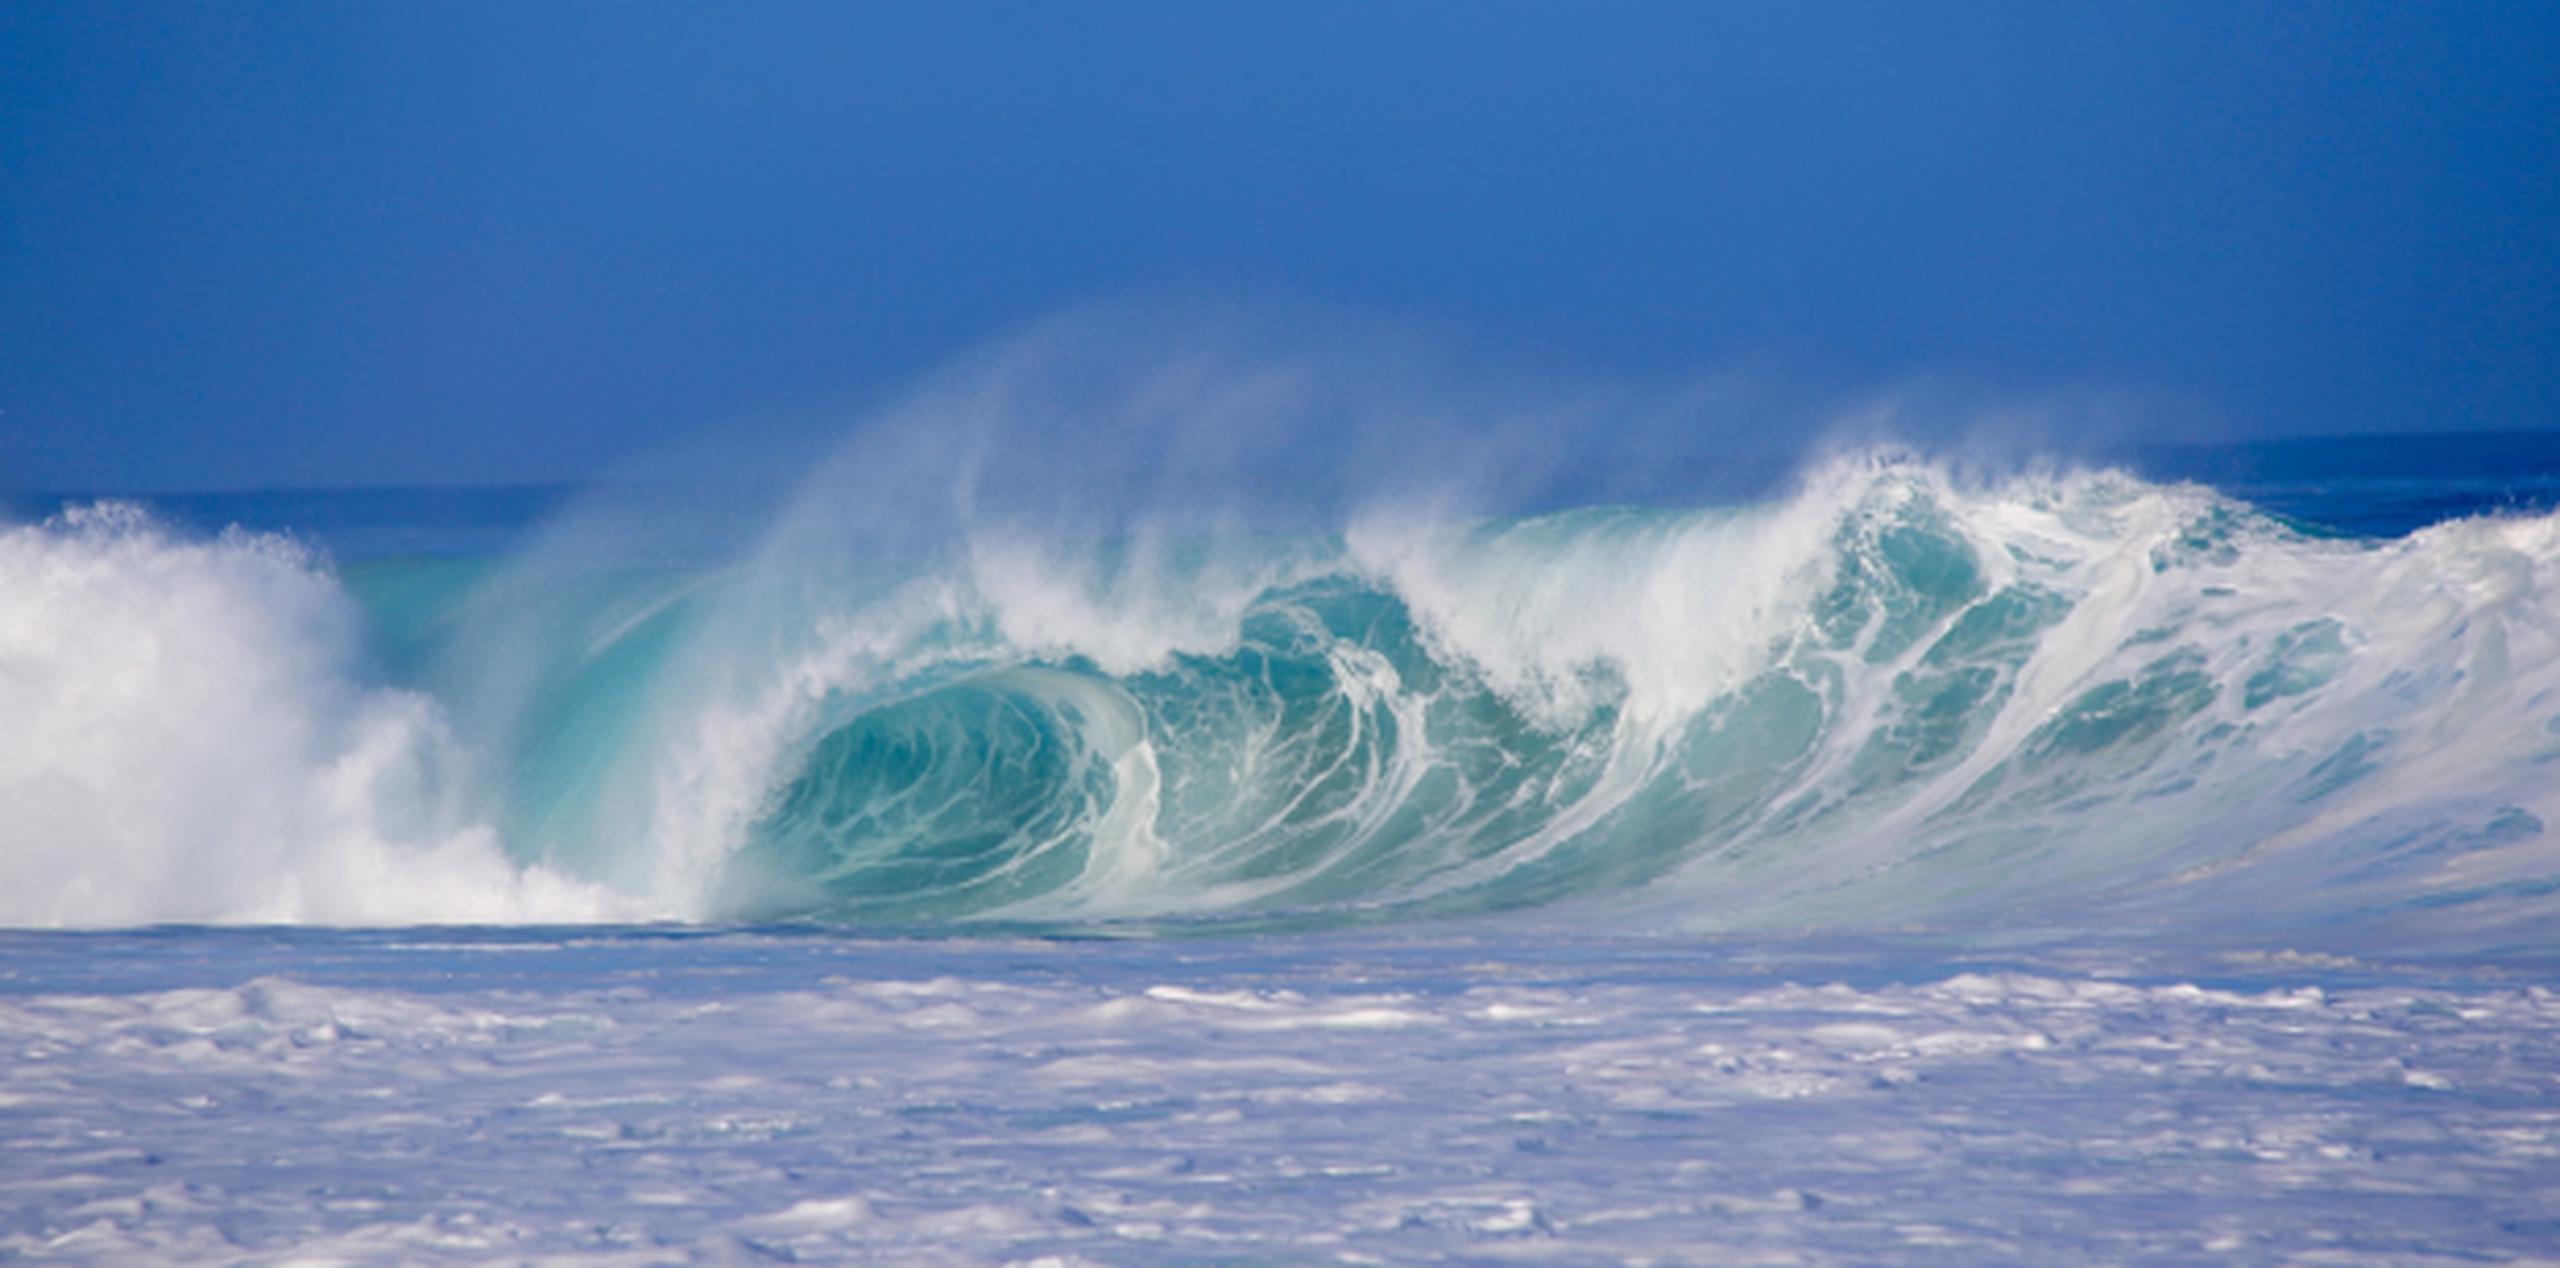 Se han registrado olas de 10 y 11 pies. (Shutterstock)